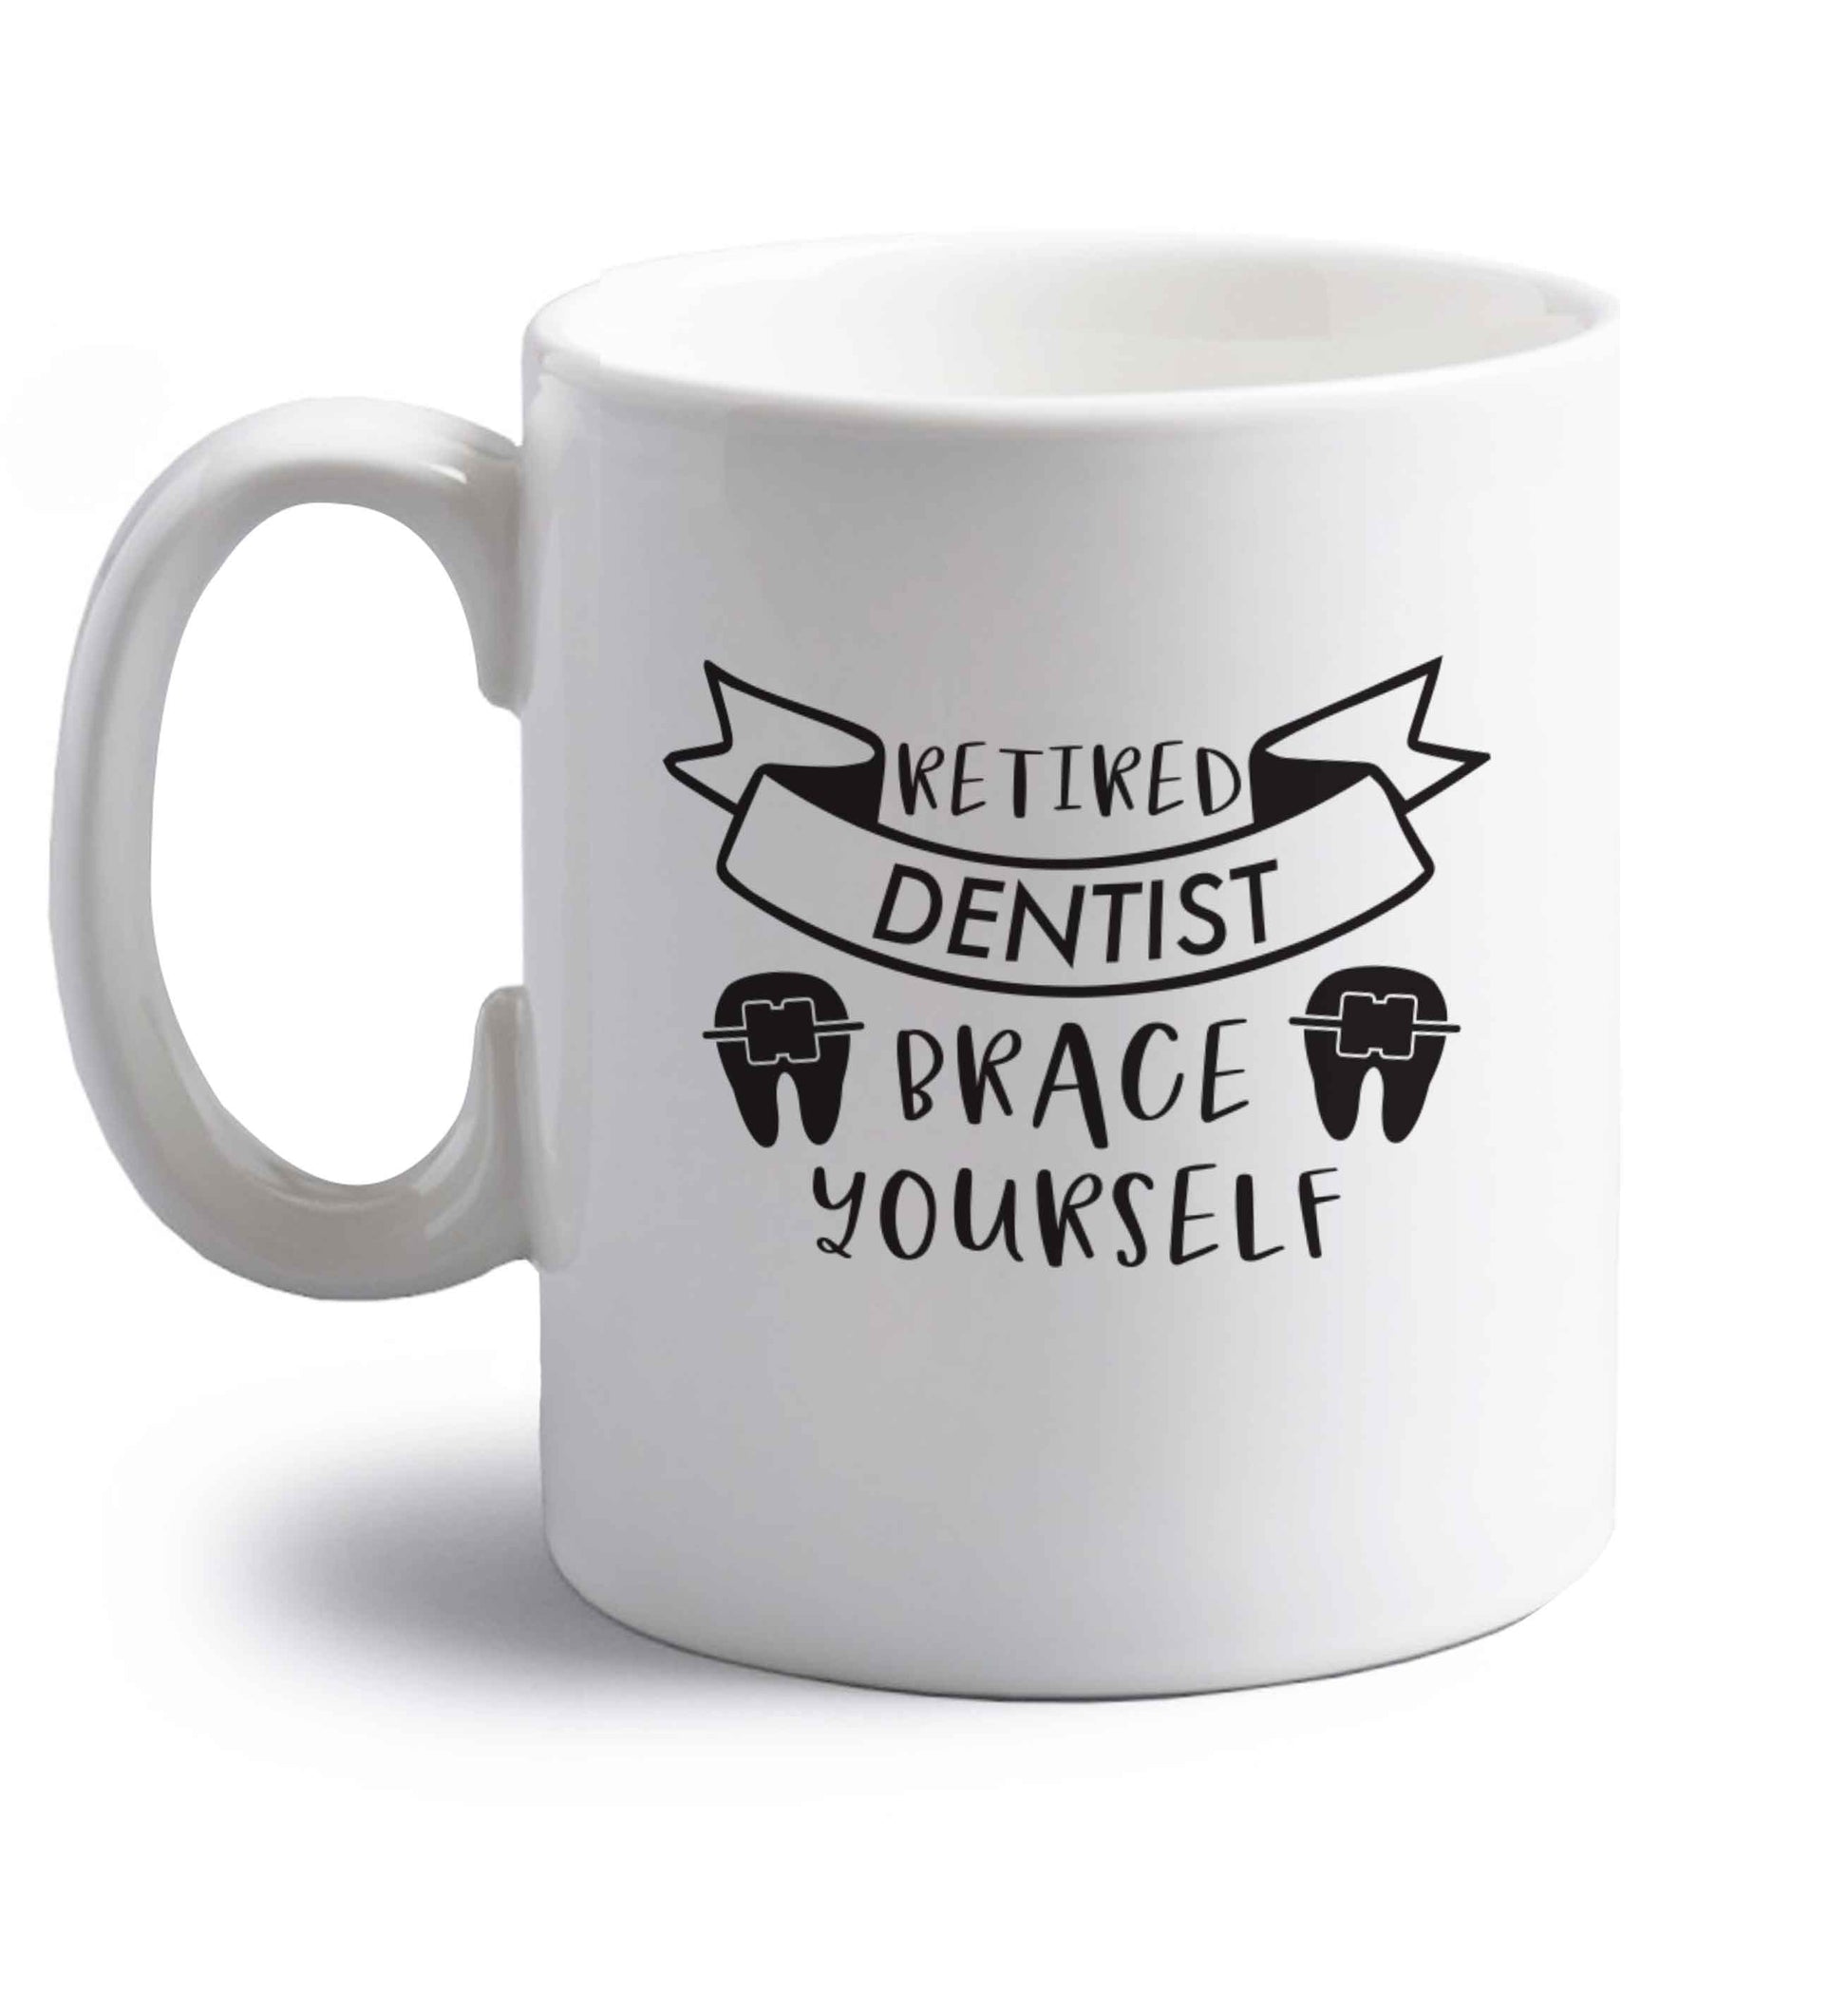 Retired dentist brace yourself right handed white ceramic mug 